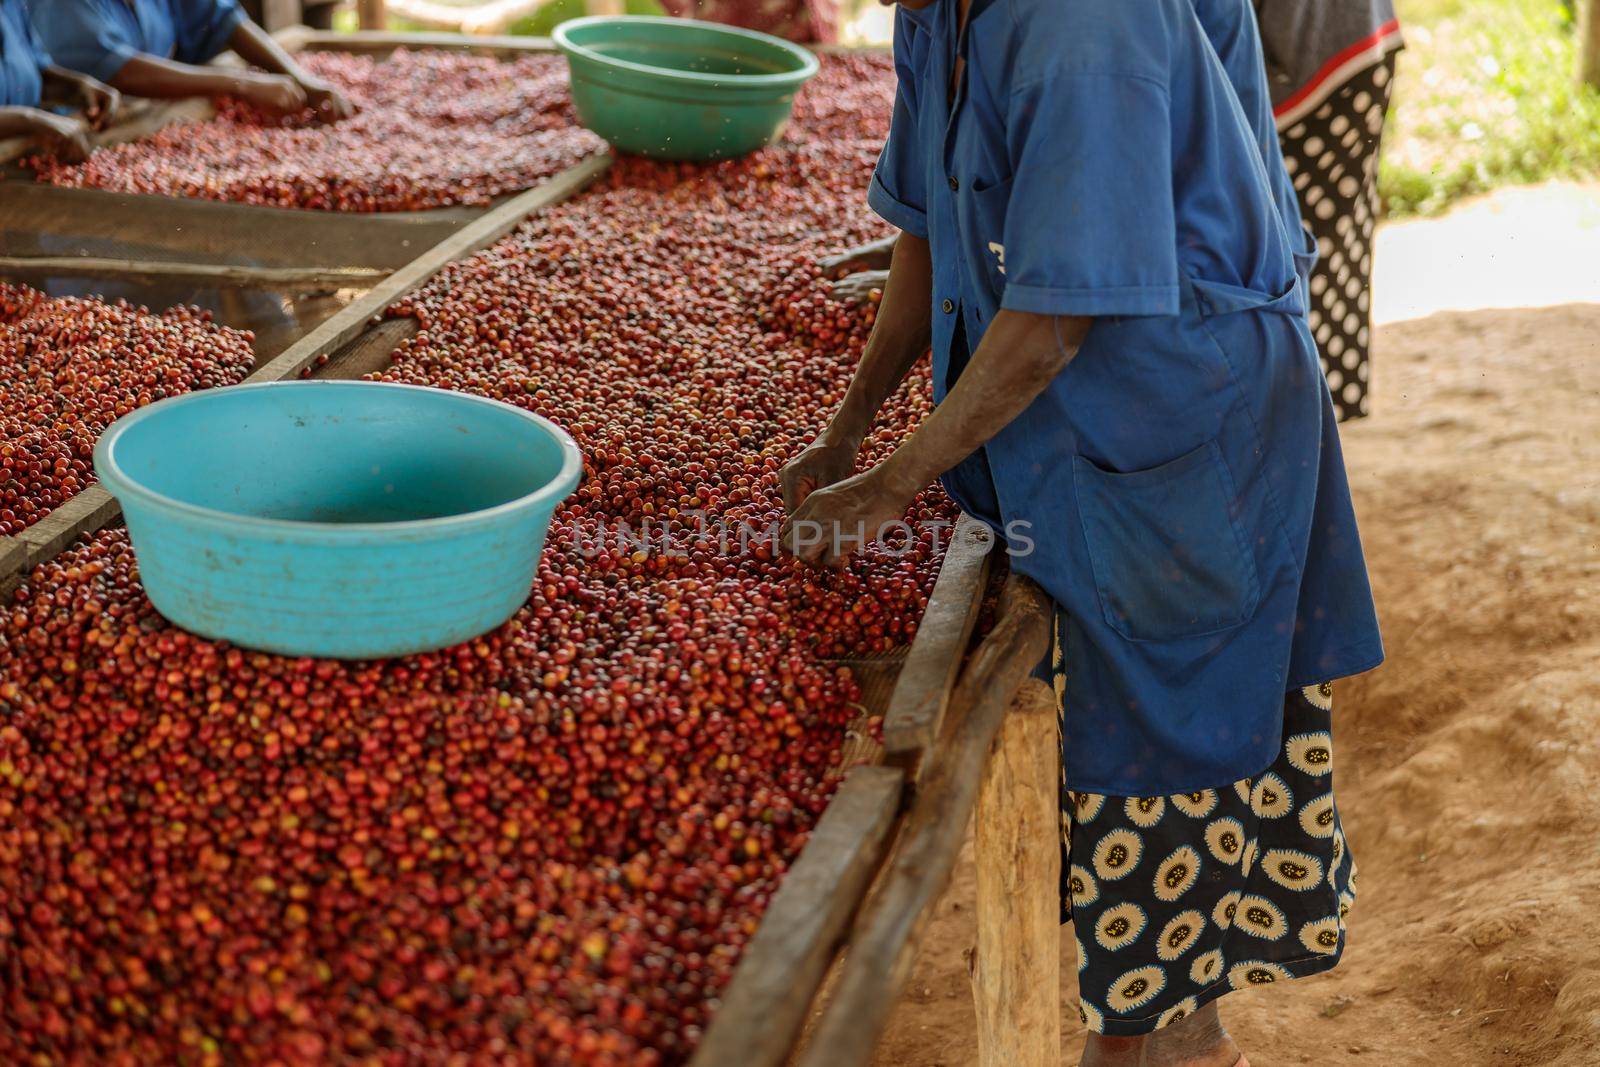 African American woman sorting coffee berries using a large bowl by Yaroslav_astakhov